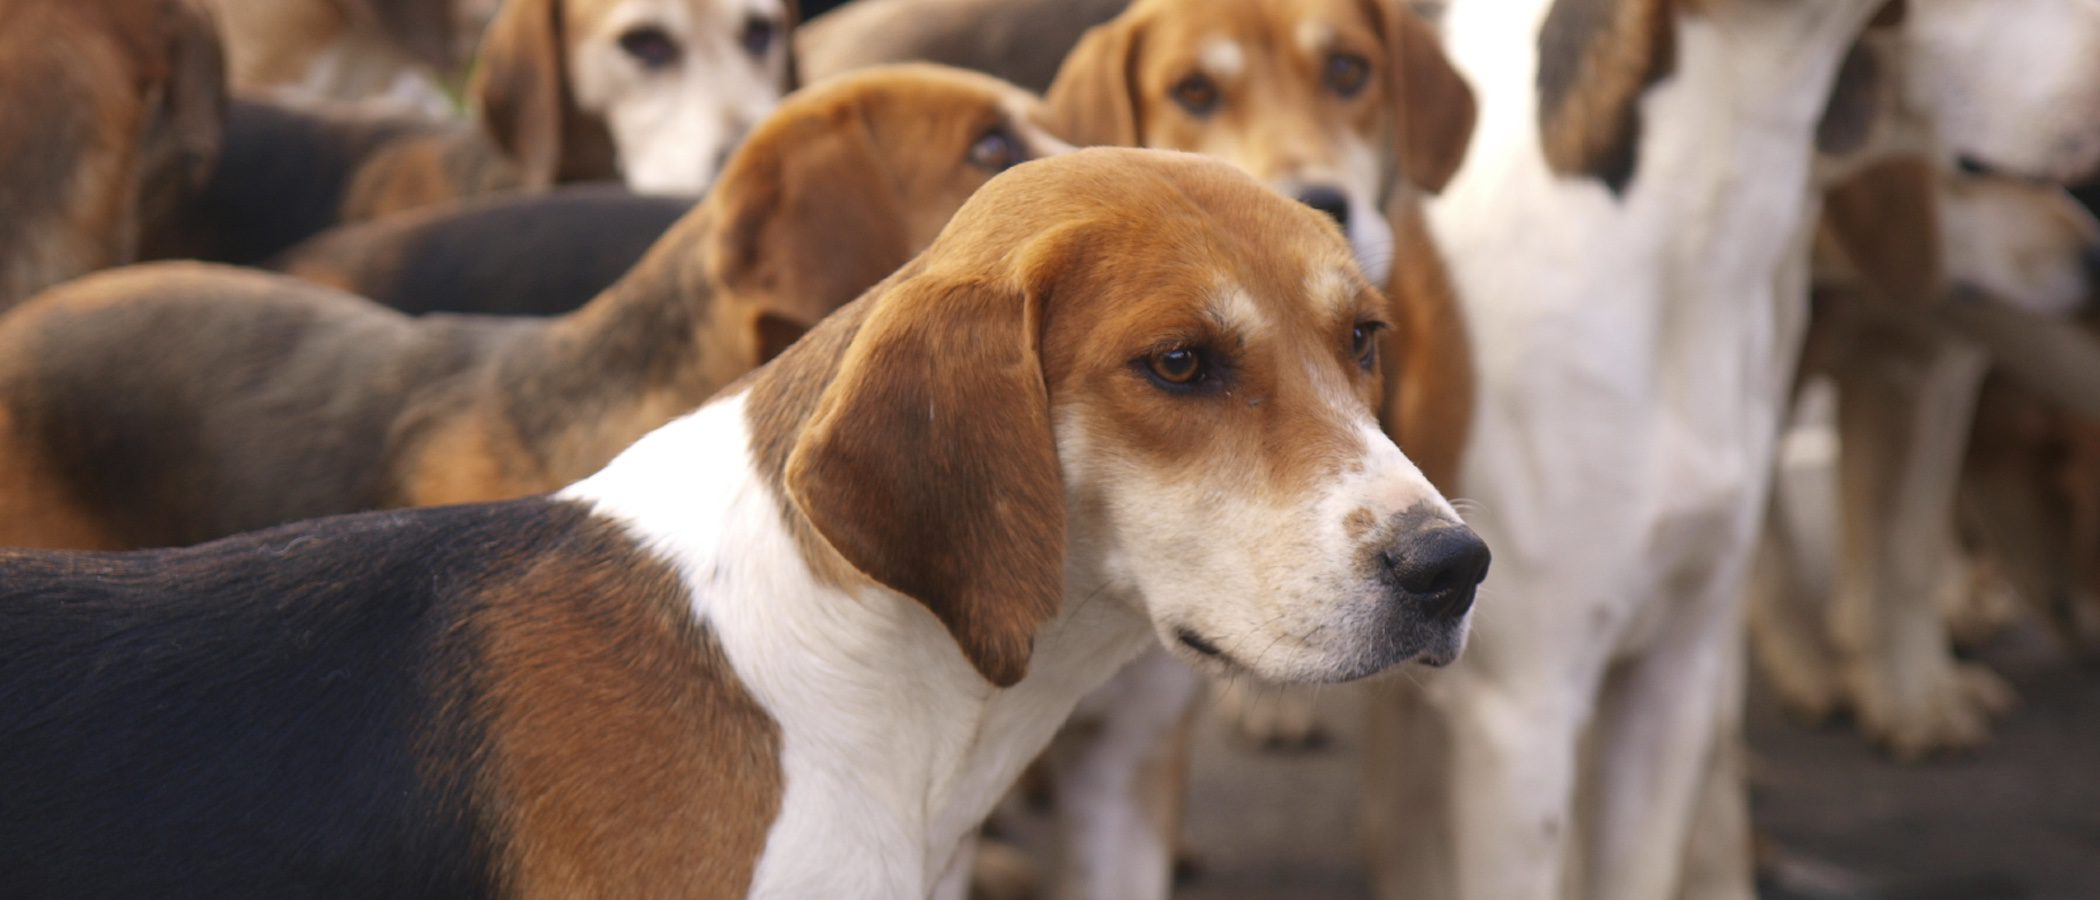 Razas de perros: Diferencias y semejanzas entre los Beagle y los Foxhound